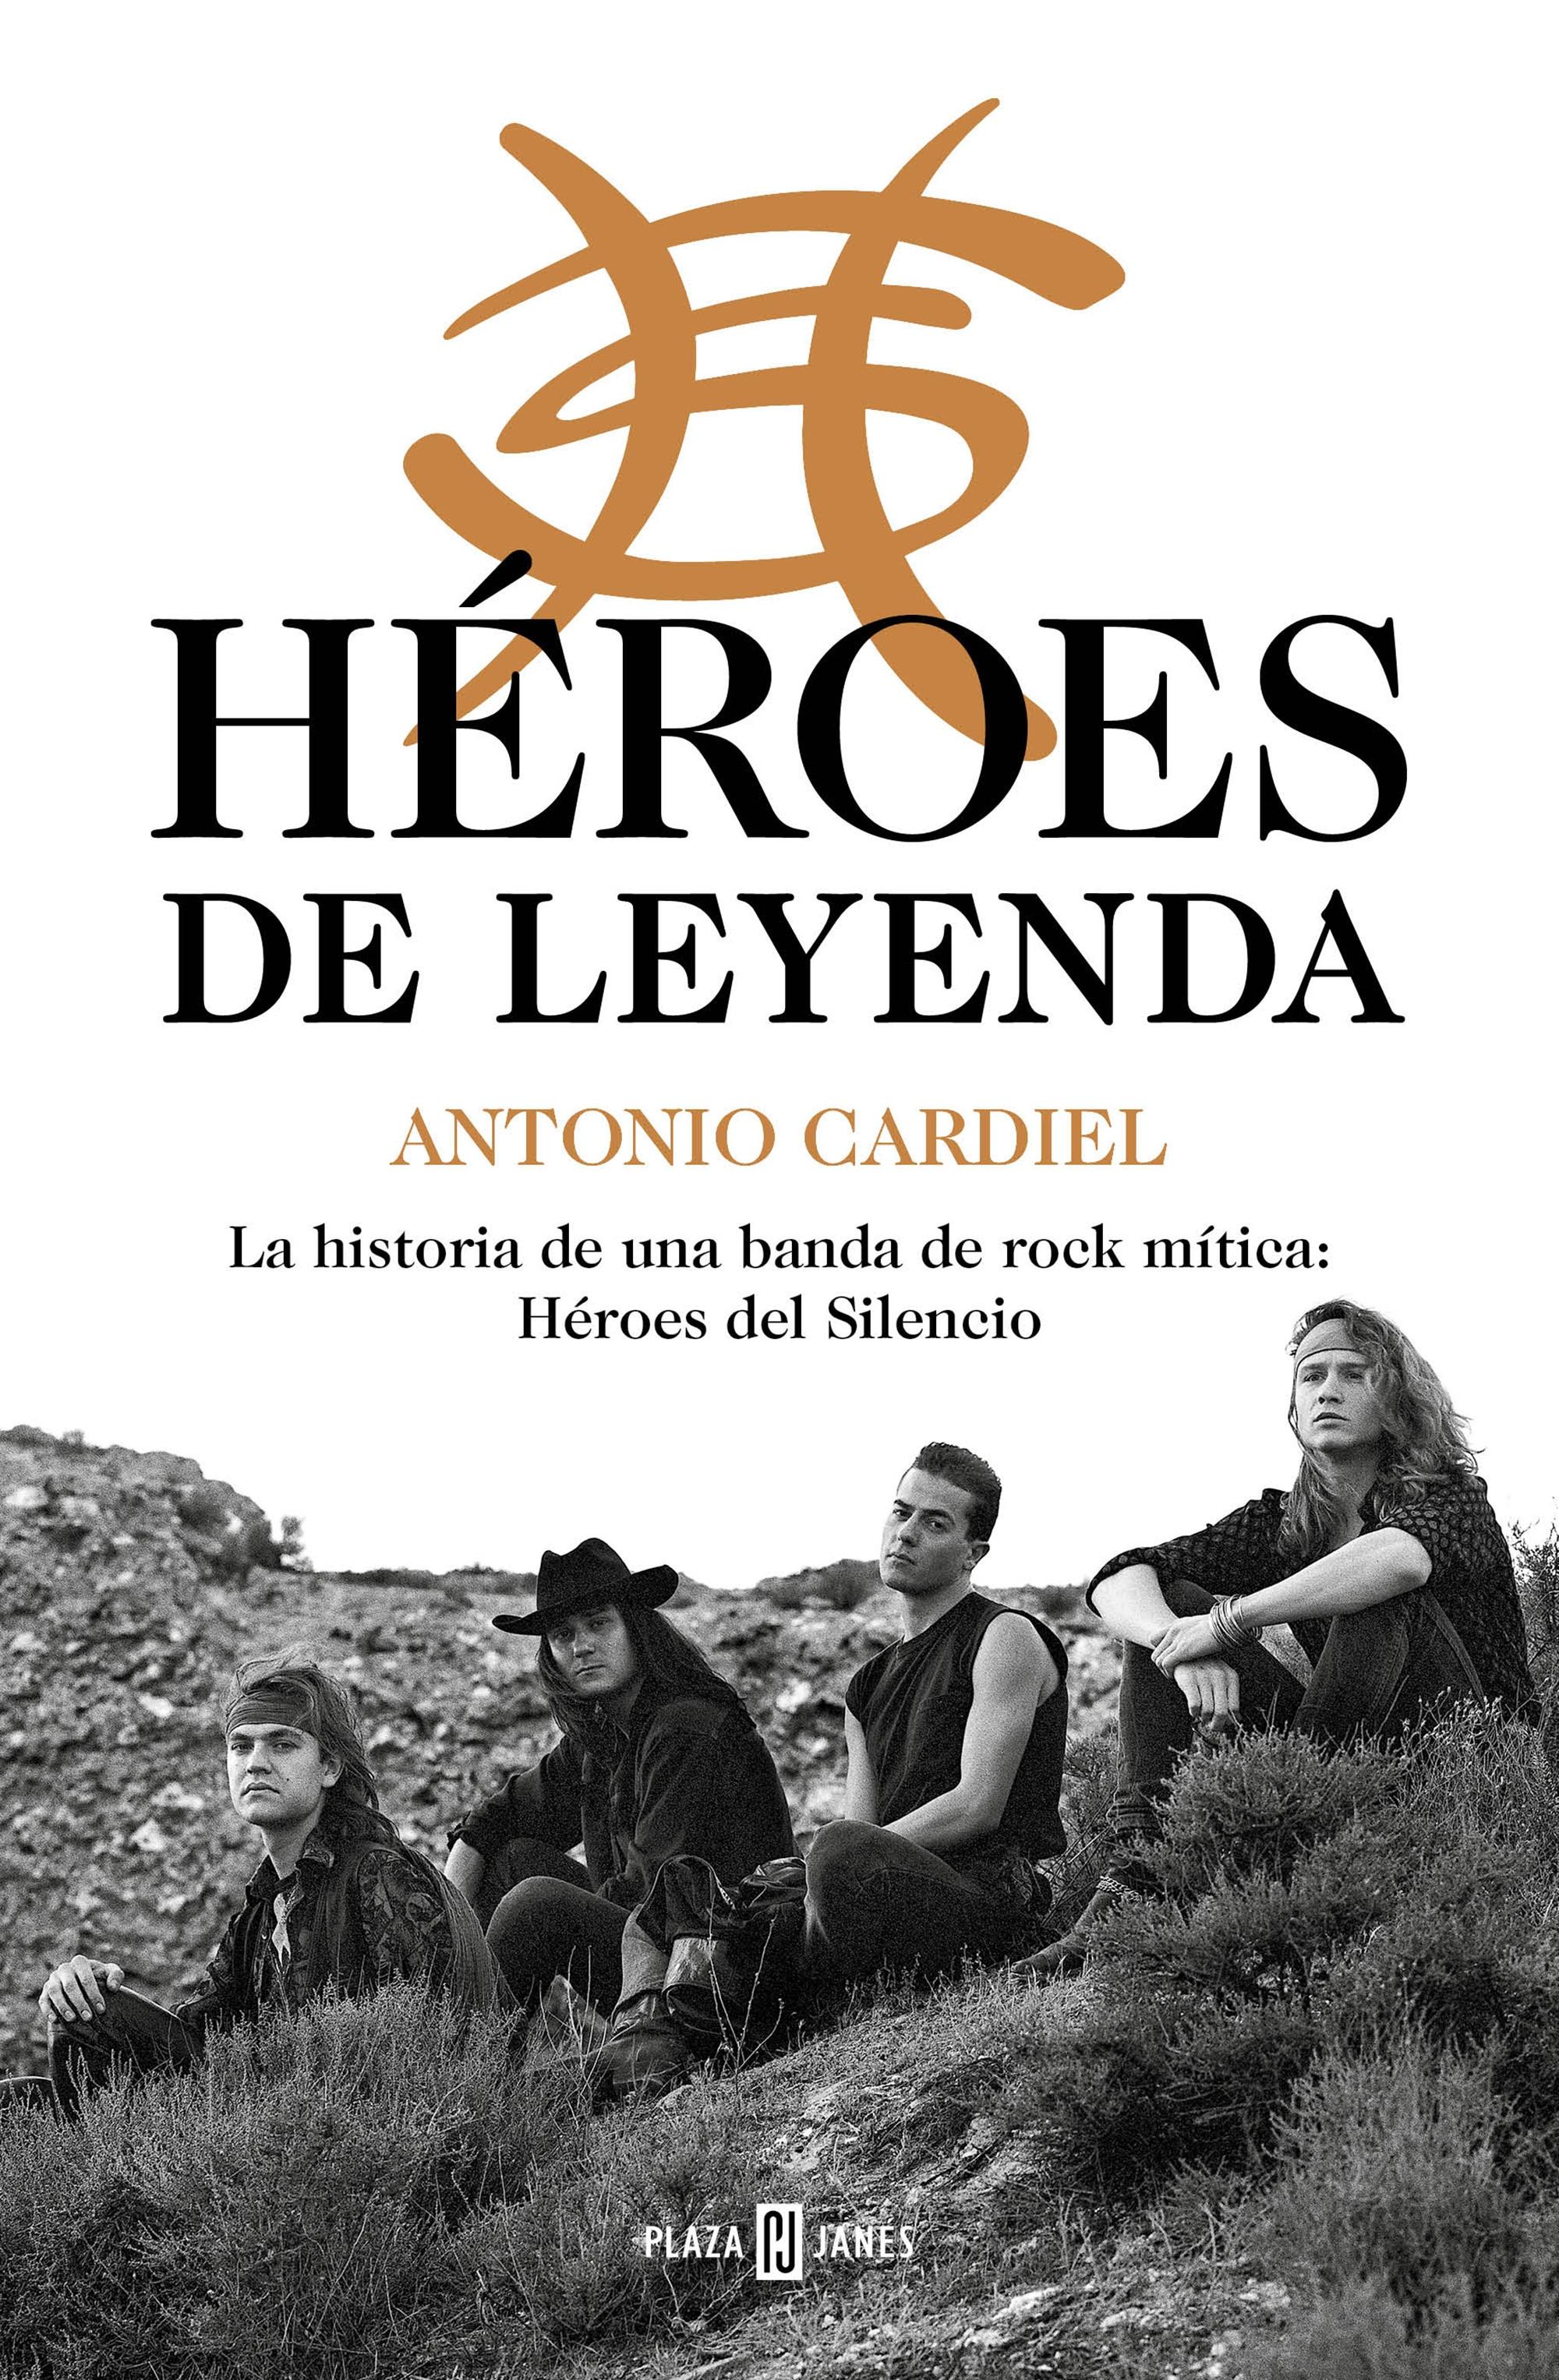 Héroes de leyenda "La historia de una banda de rock mítica: Héroes del Silencio"